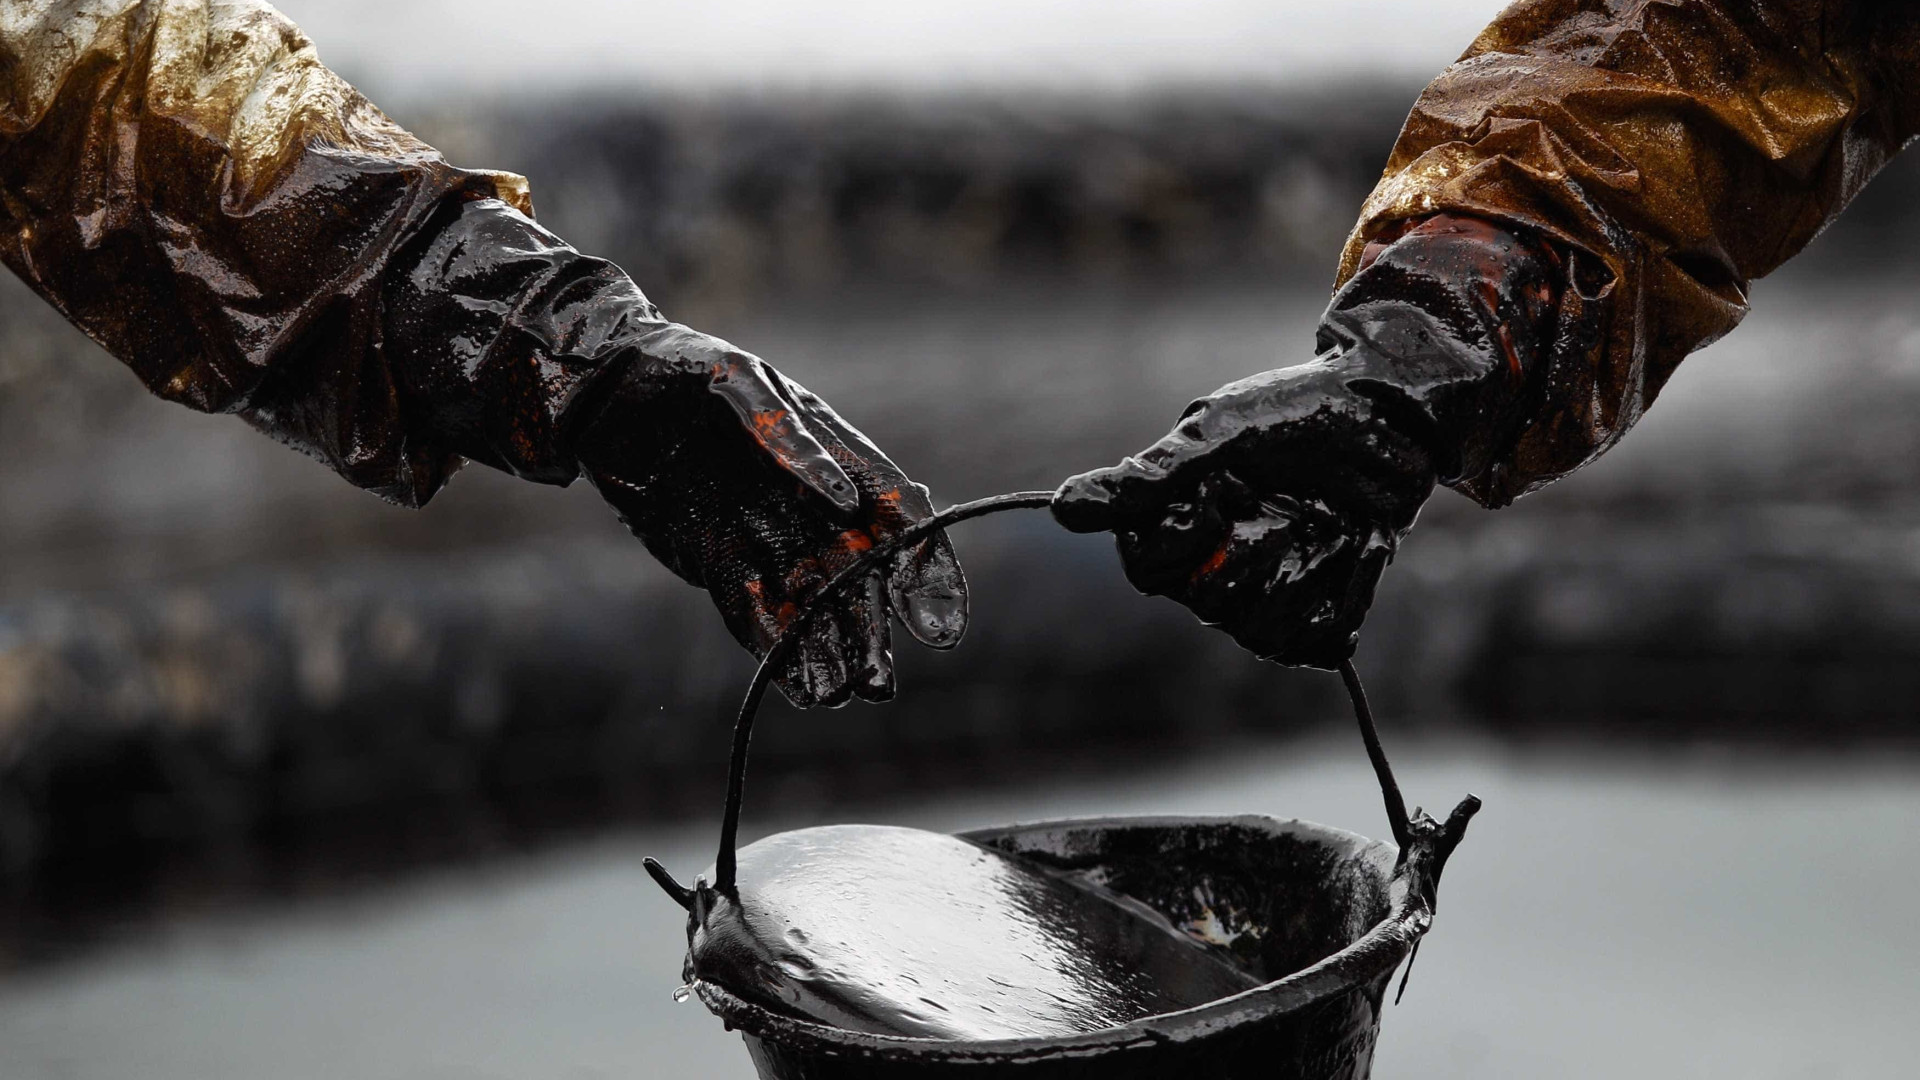 Iraque descobre adicional de dez
bilhões de barris de petróleo